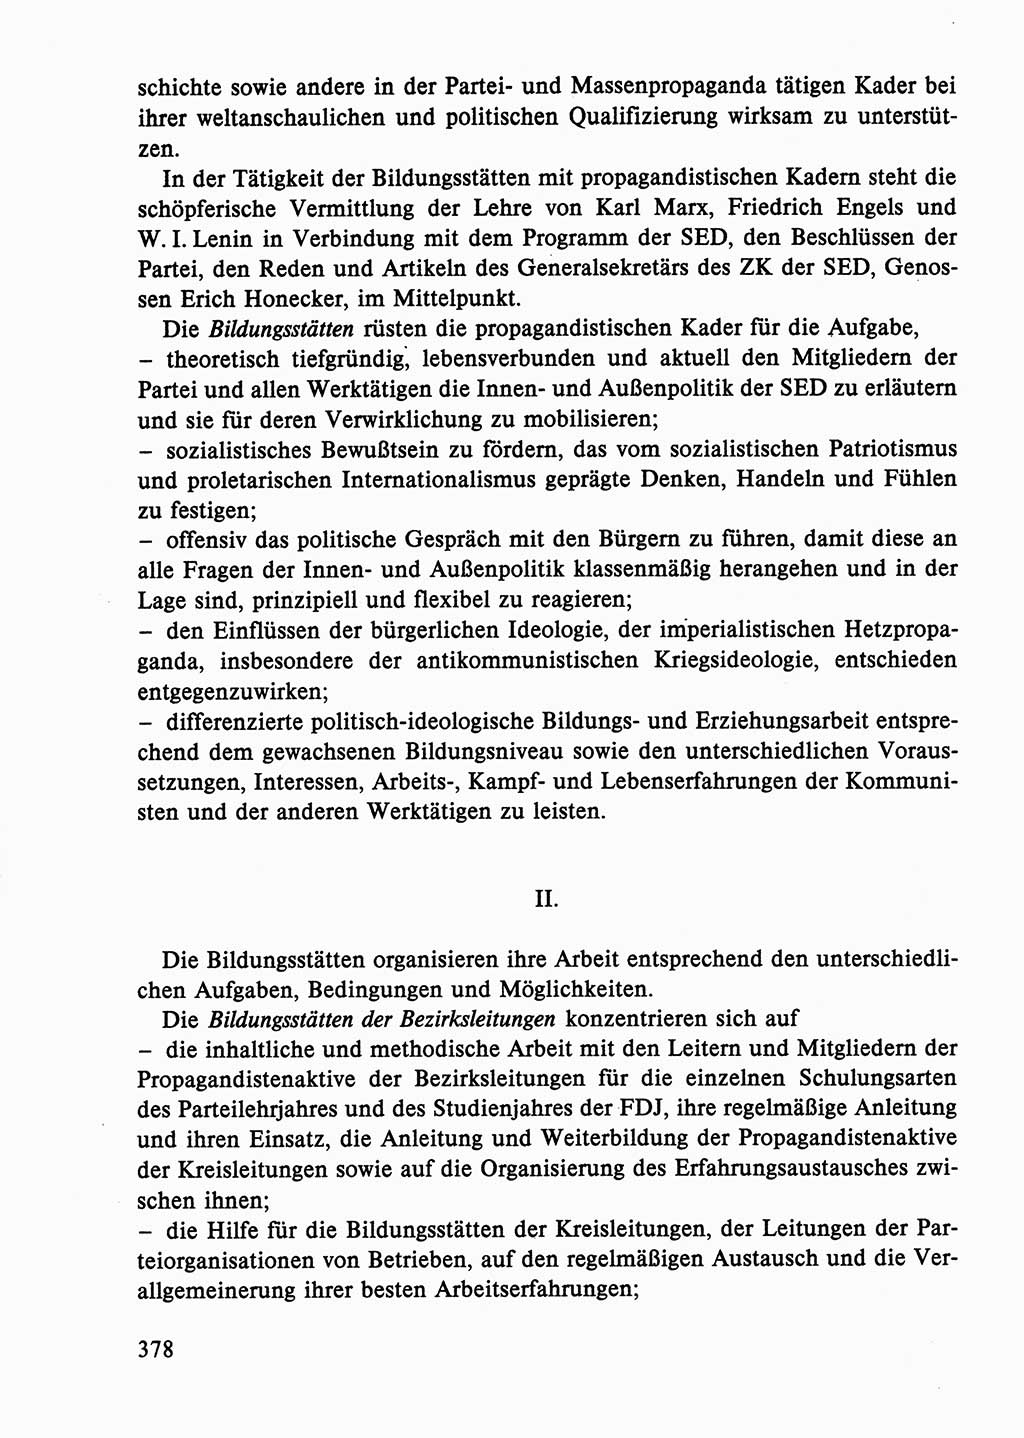 Dokumente der Sozialistischen Einheitspartei Deutschlands (SED) [Deutsche Demokratische Republik (DDR)] 1986-1987, Seite 378 (Dok. SED DDR 1986-1987, S. 378)